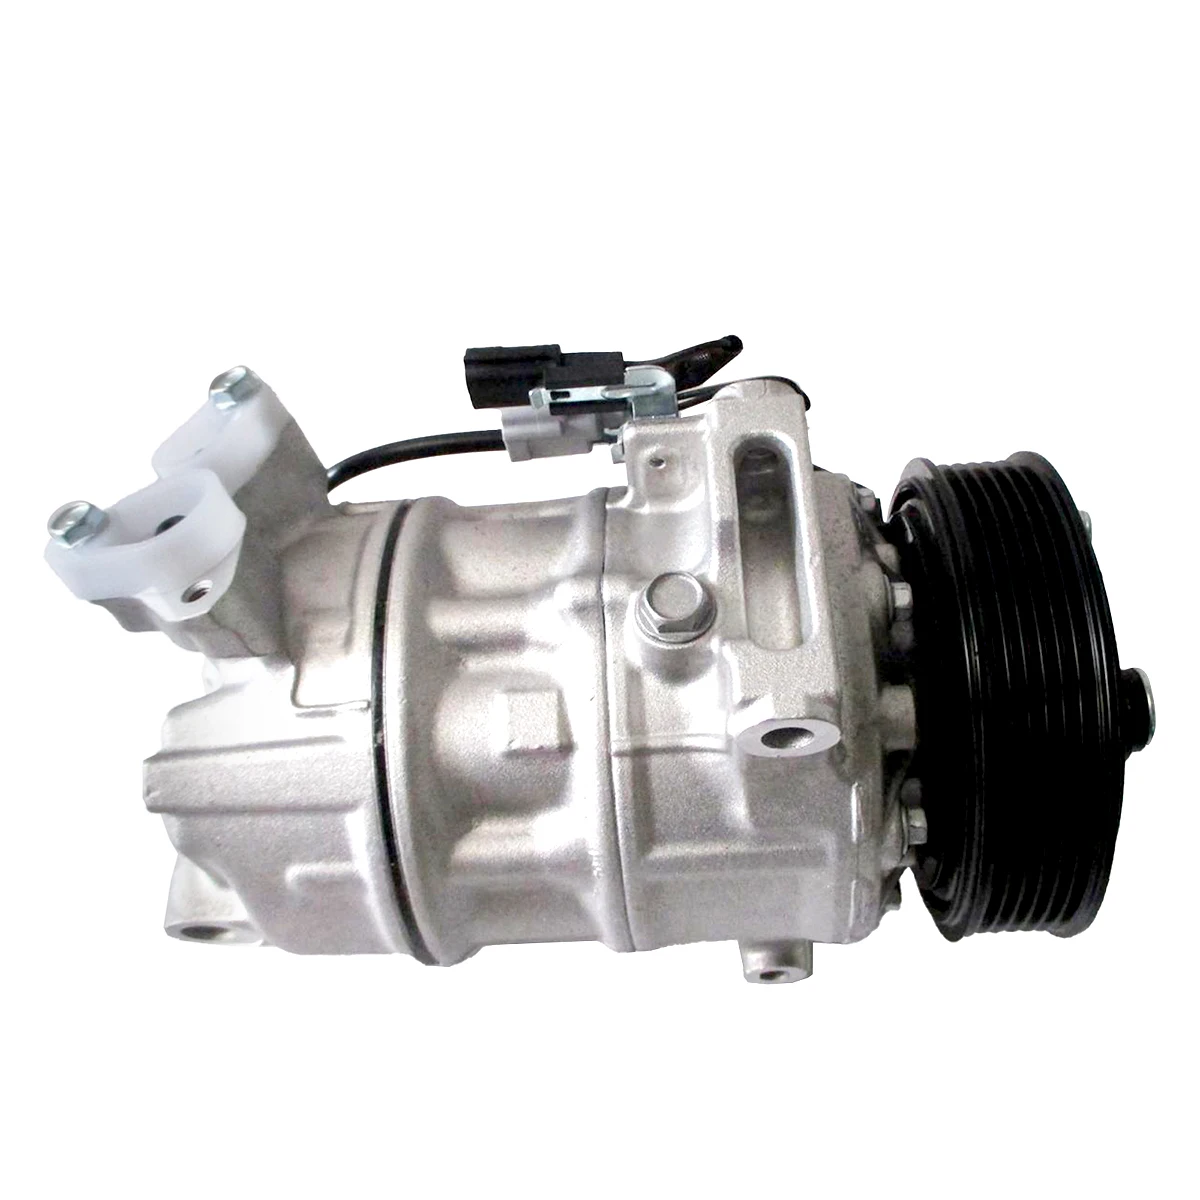 

Treeligo 12V Car Air Conditioner Compressor A/C Compressor Fits for GMC Terrain 2.4L 2010-2011 16003171-102 22853050 20879988